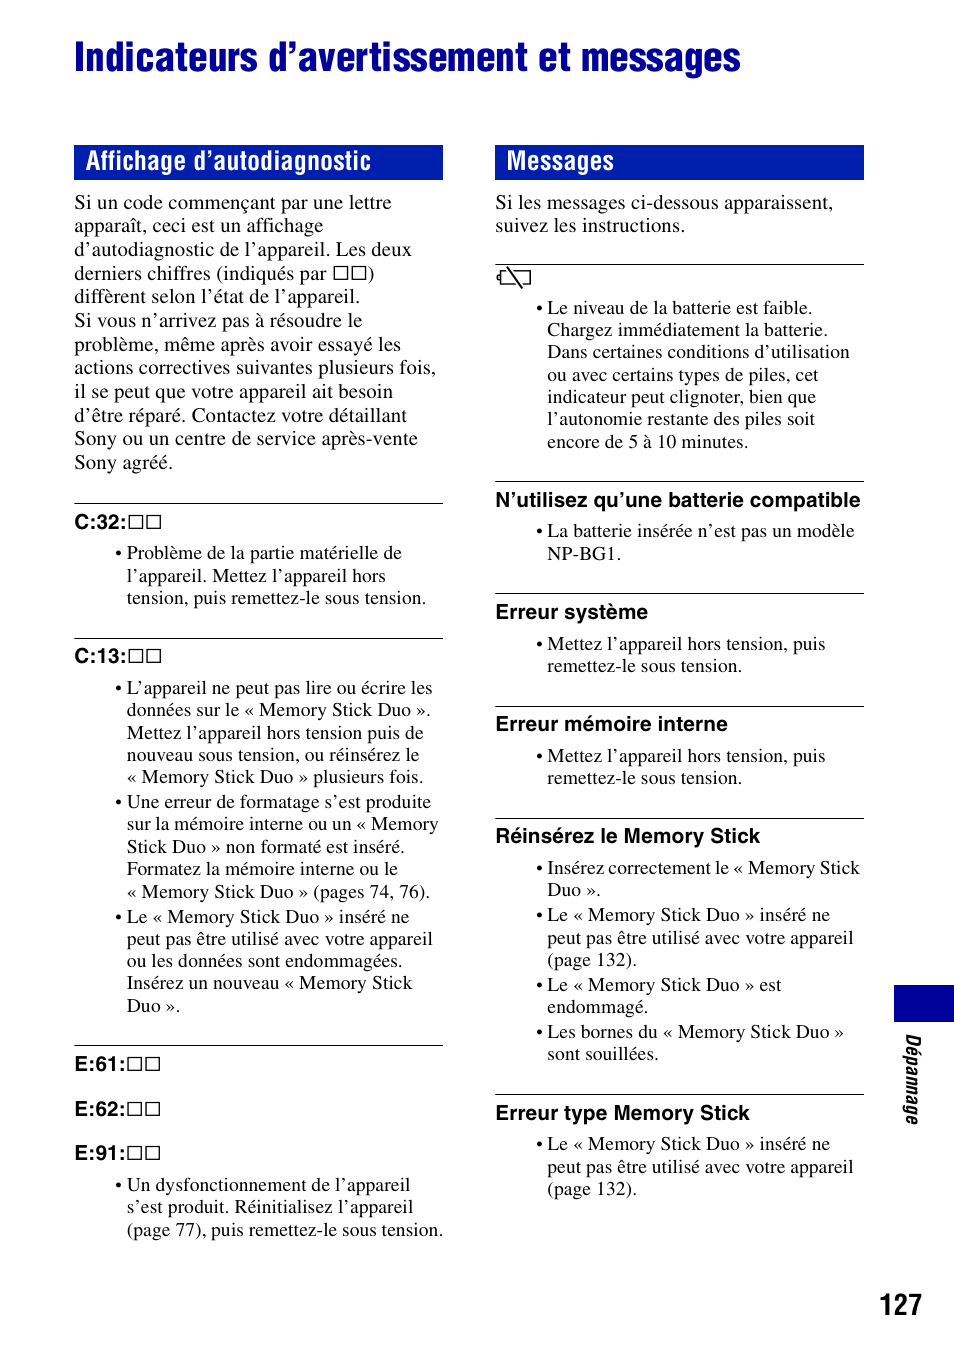 Indicateurs d’avertissement et messages, Ée (127), Affichage d’autodiagnostic messages | Sony DSC-H7 Manuel d'utilisation | Page 127 / 140